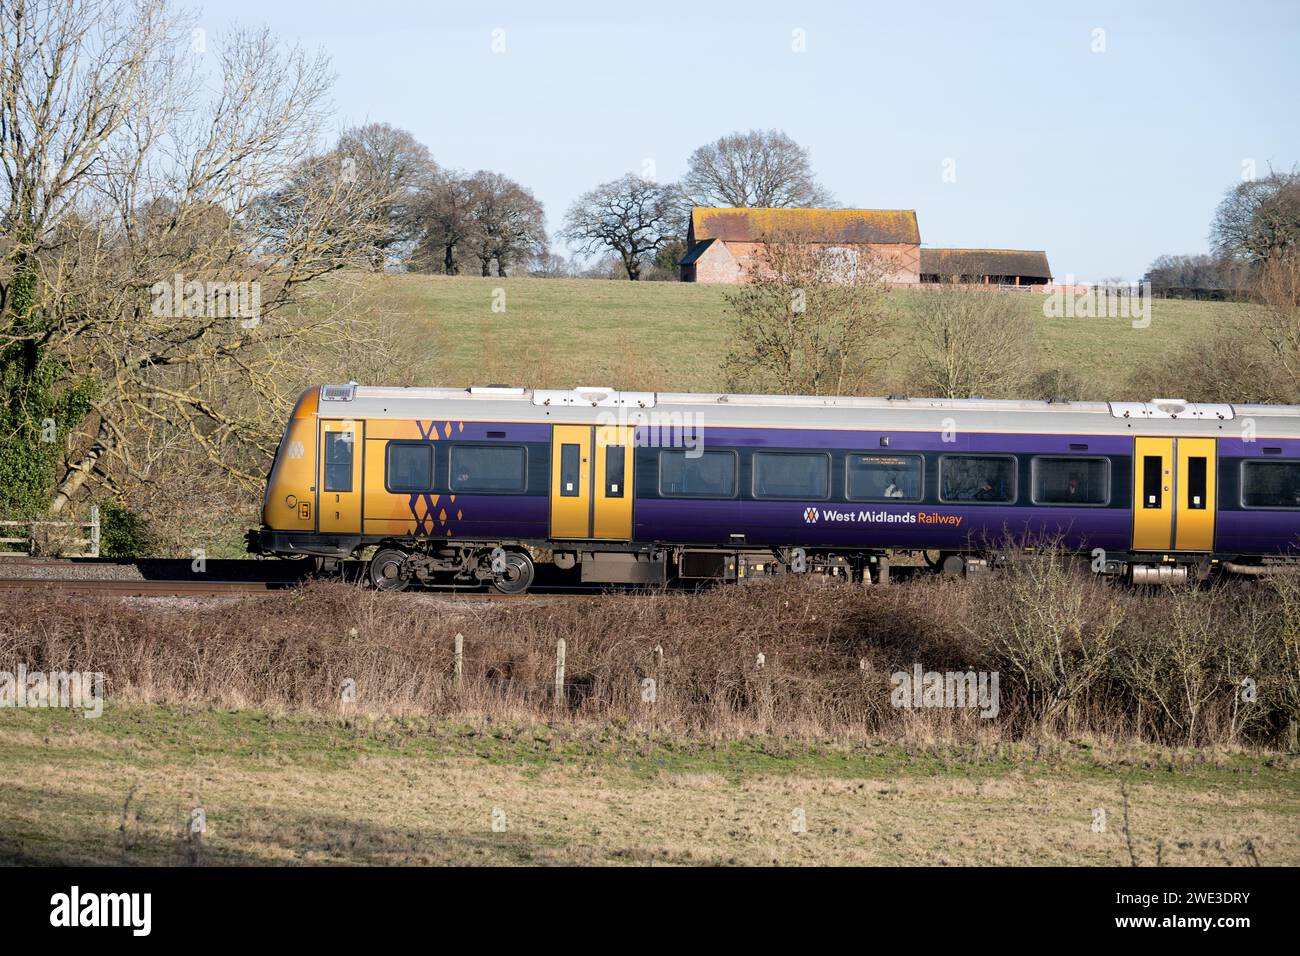 Dieselzug der West Midlands Railway Klasse 170, Warwickshire, Großbritannien Stockfoto